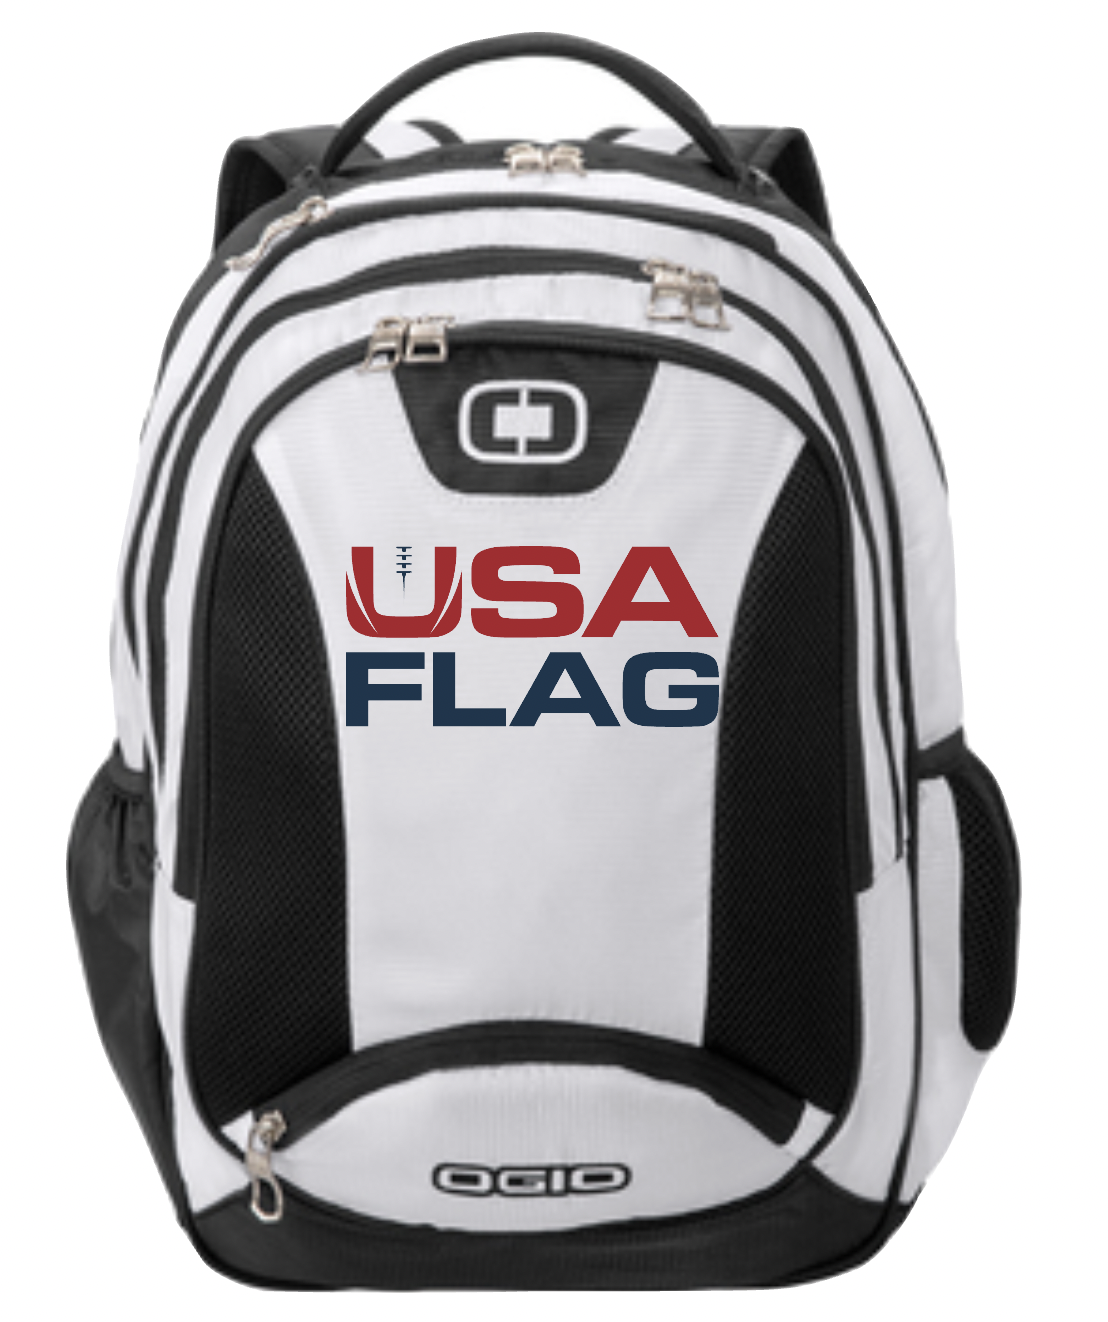 USA Flag Ogio Backpack - White/Black/Silver